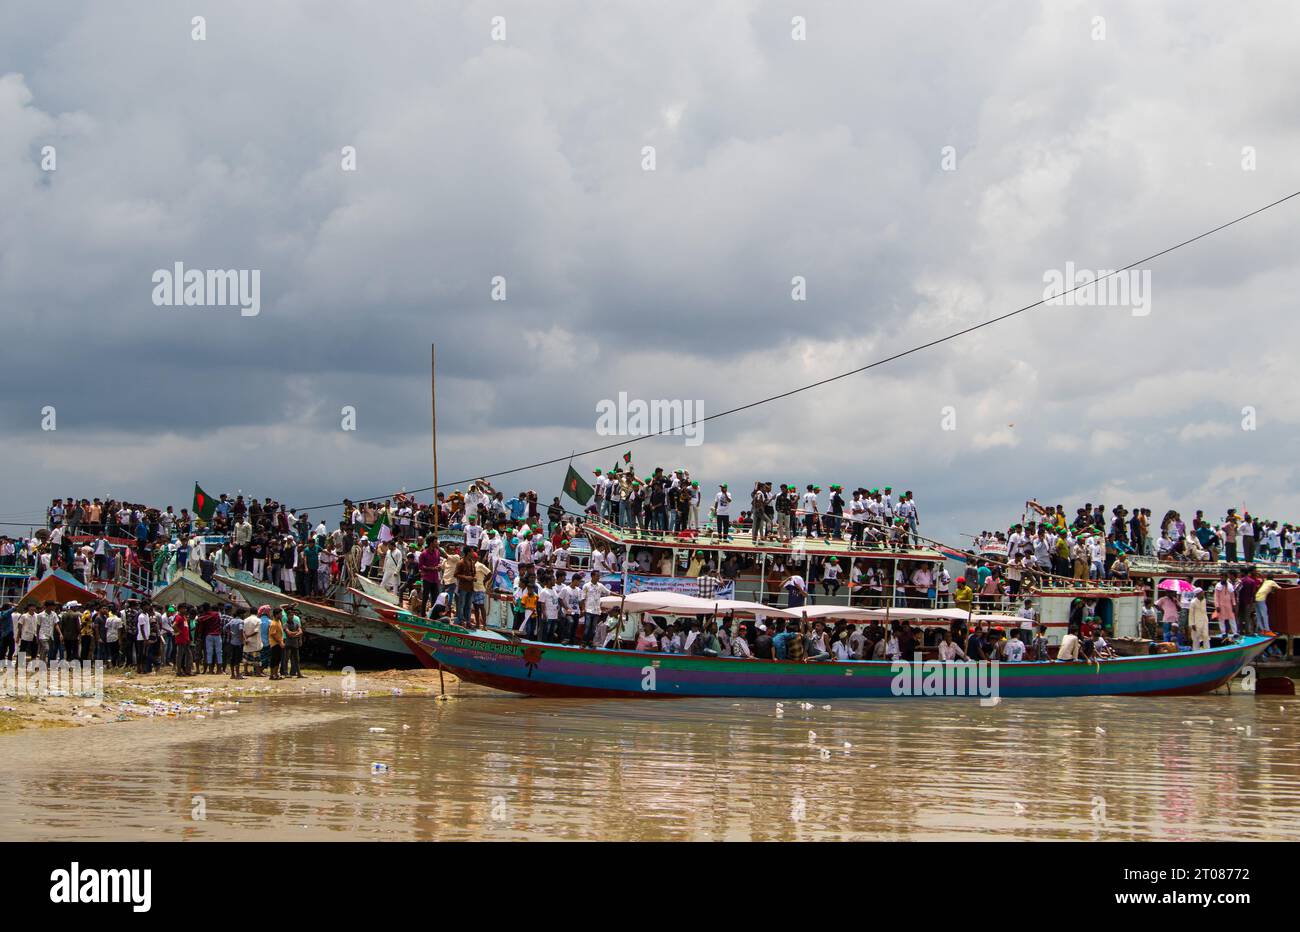 Estación de barco tradicional, estilo de vida de la gente y fotografías de cielo nublado capturadas el 25 de junio de 2022, desde la estación de barco Mawa, Bangladesh Foto de stock